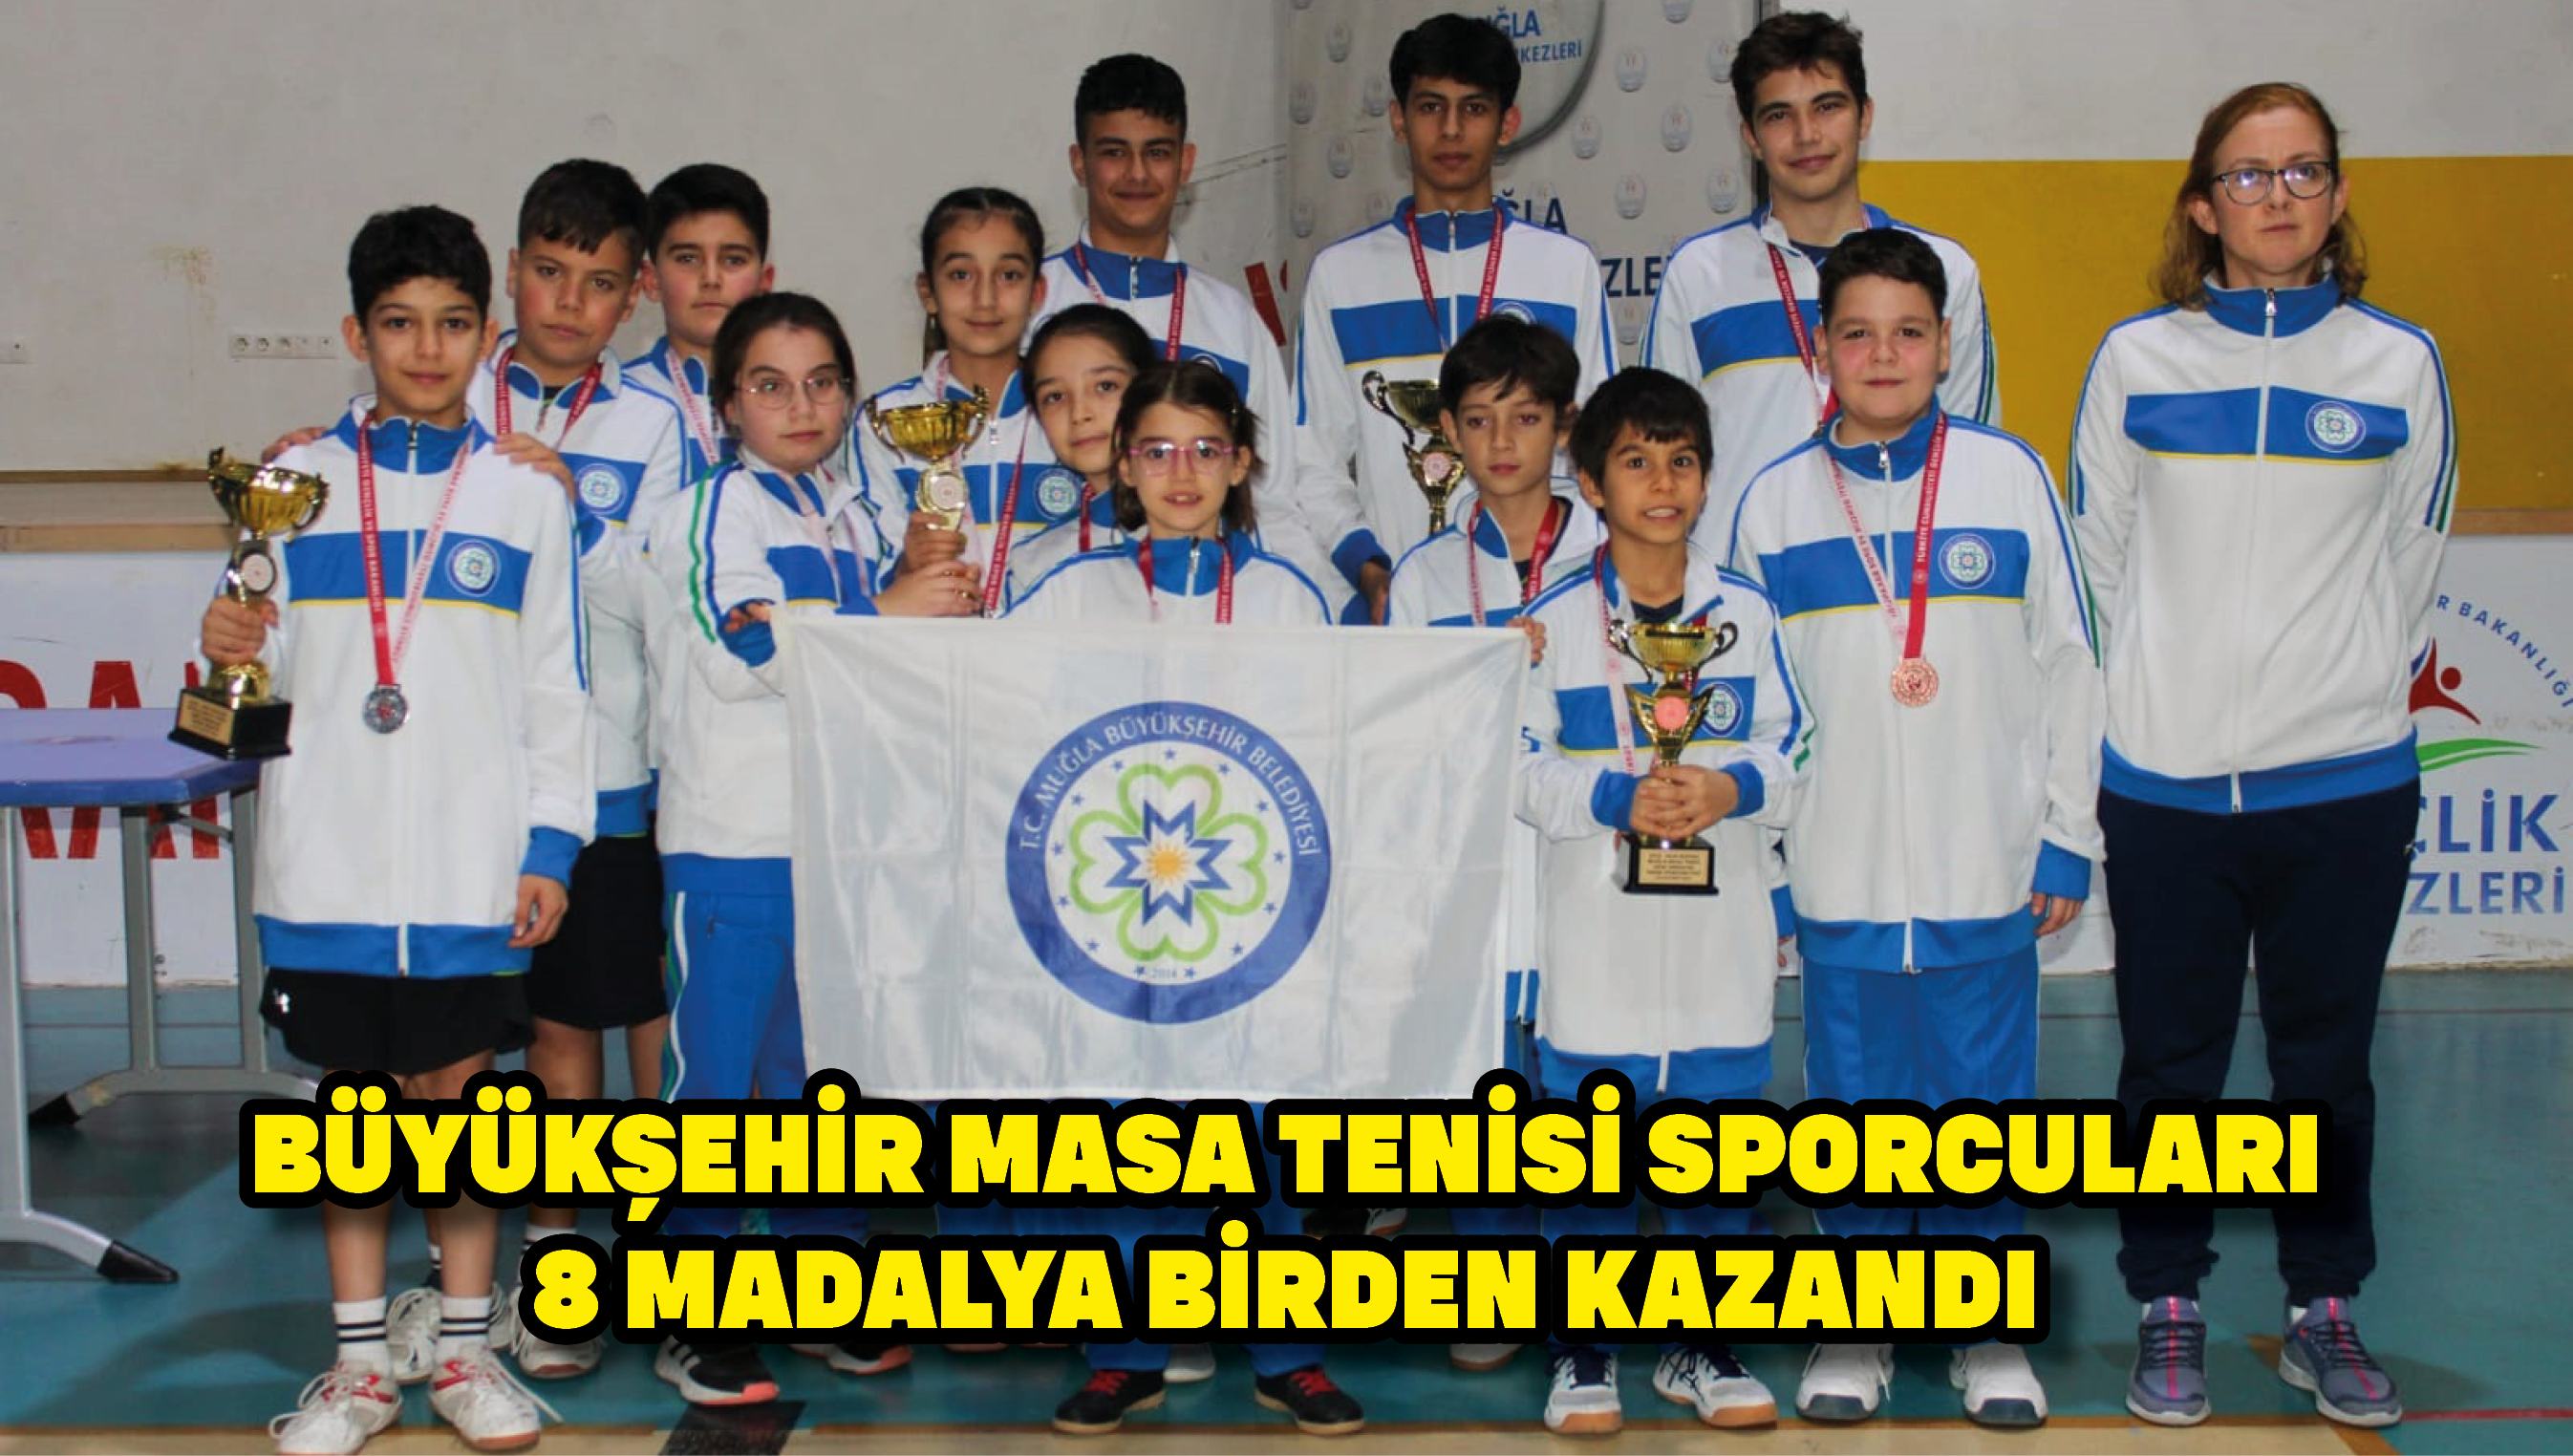 Büyükşehir Masa Tenisi Sporcuları 8 Madalya Birden Kazandı